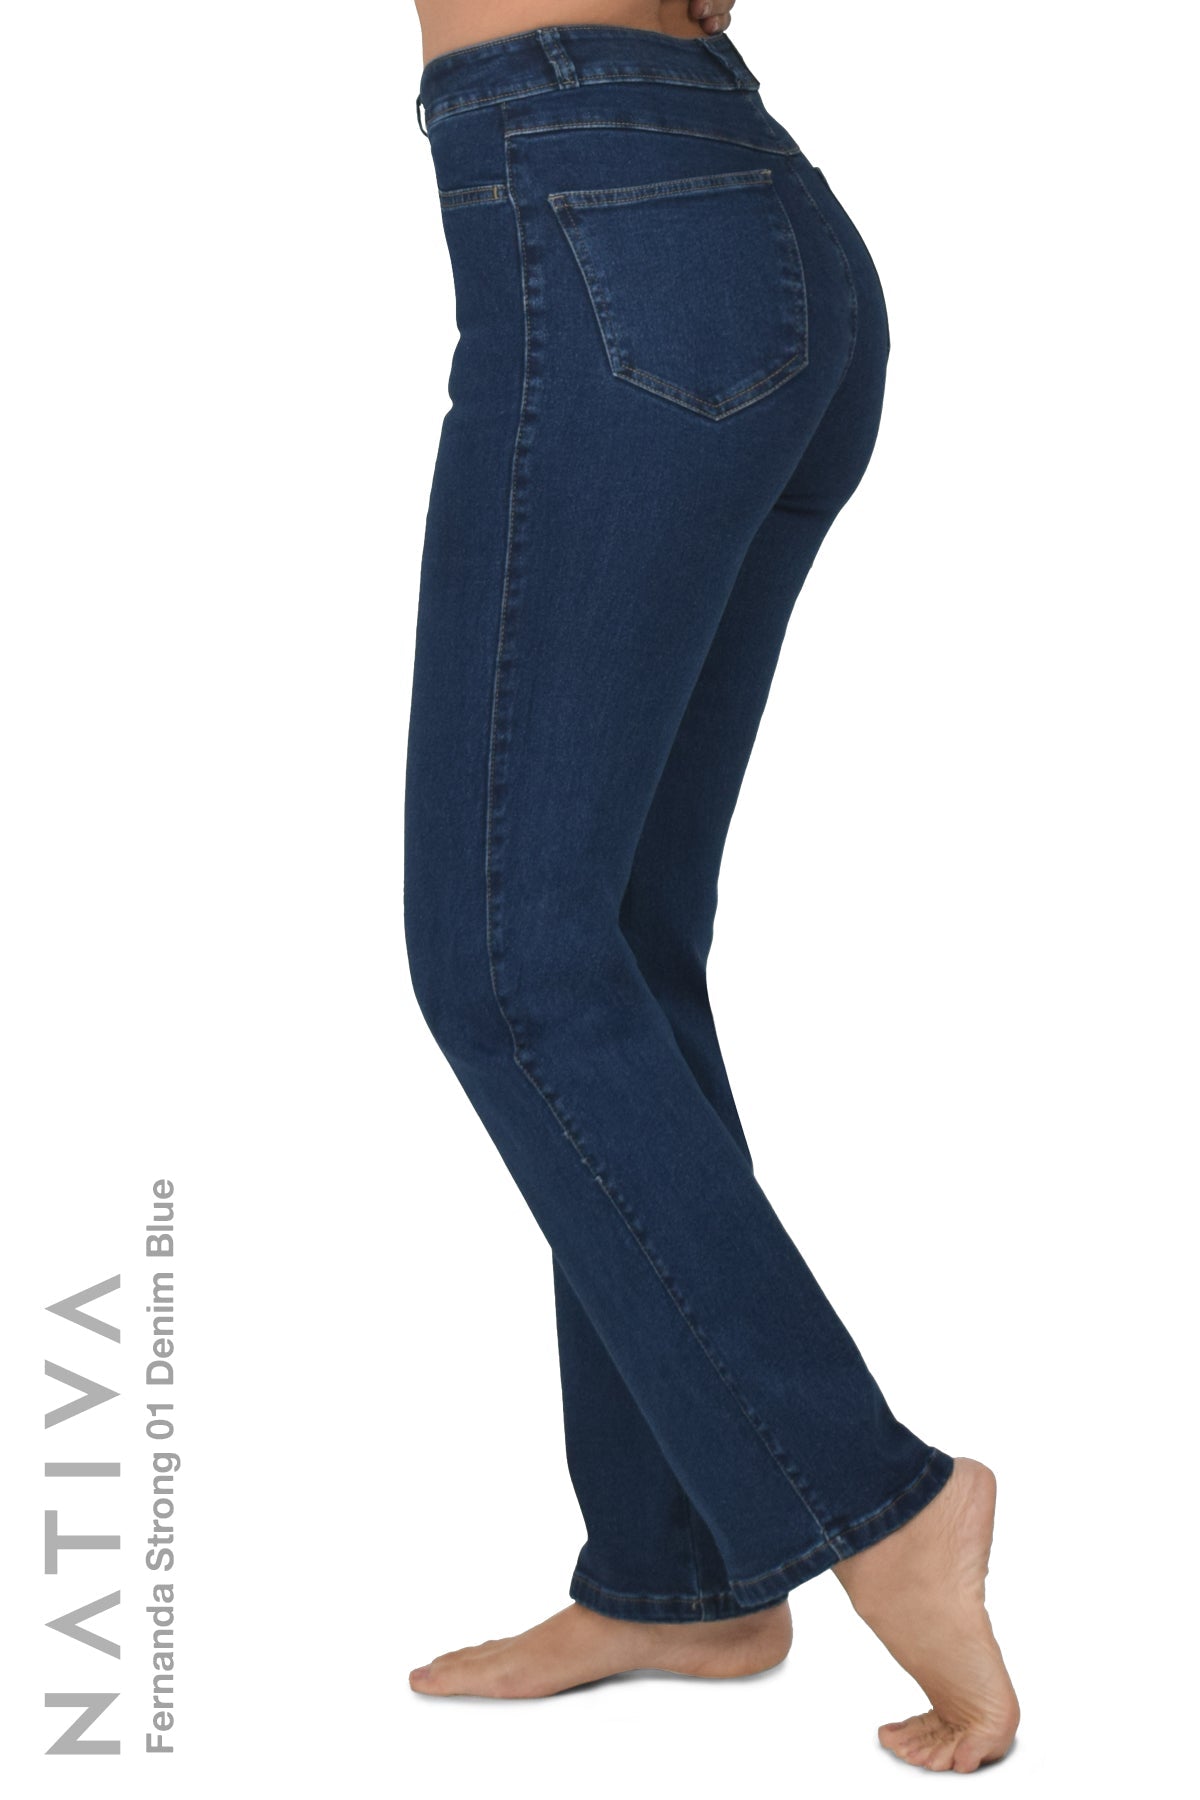 Jeans Slogan E Impressão Yin e Yang  Printed jeans, Women denim jeans,  Women jeans